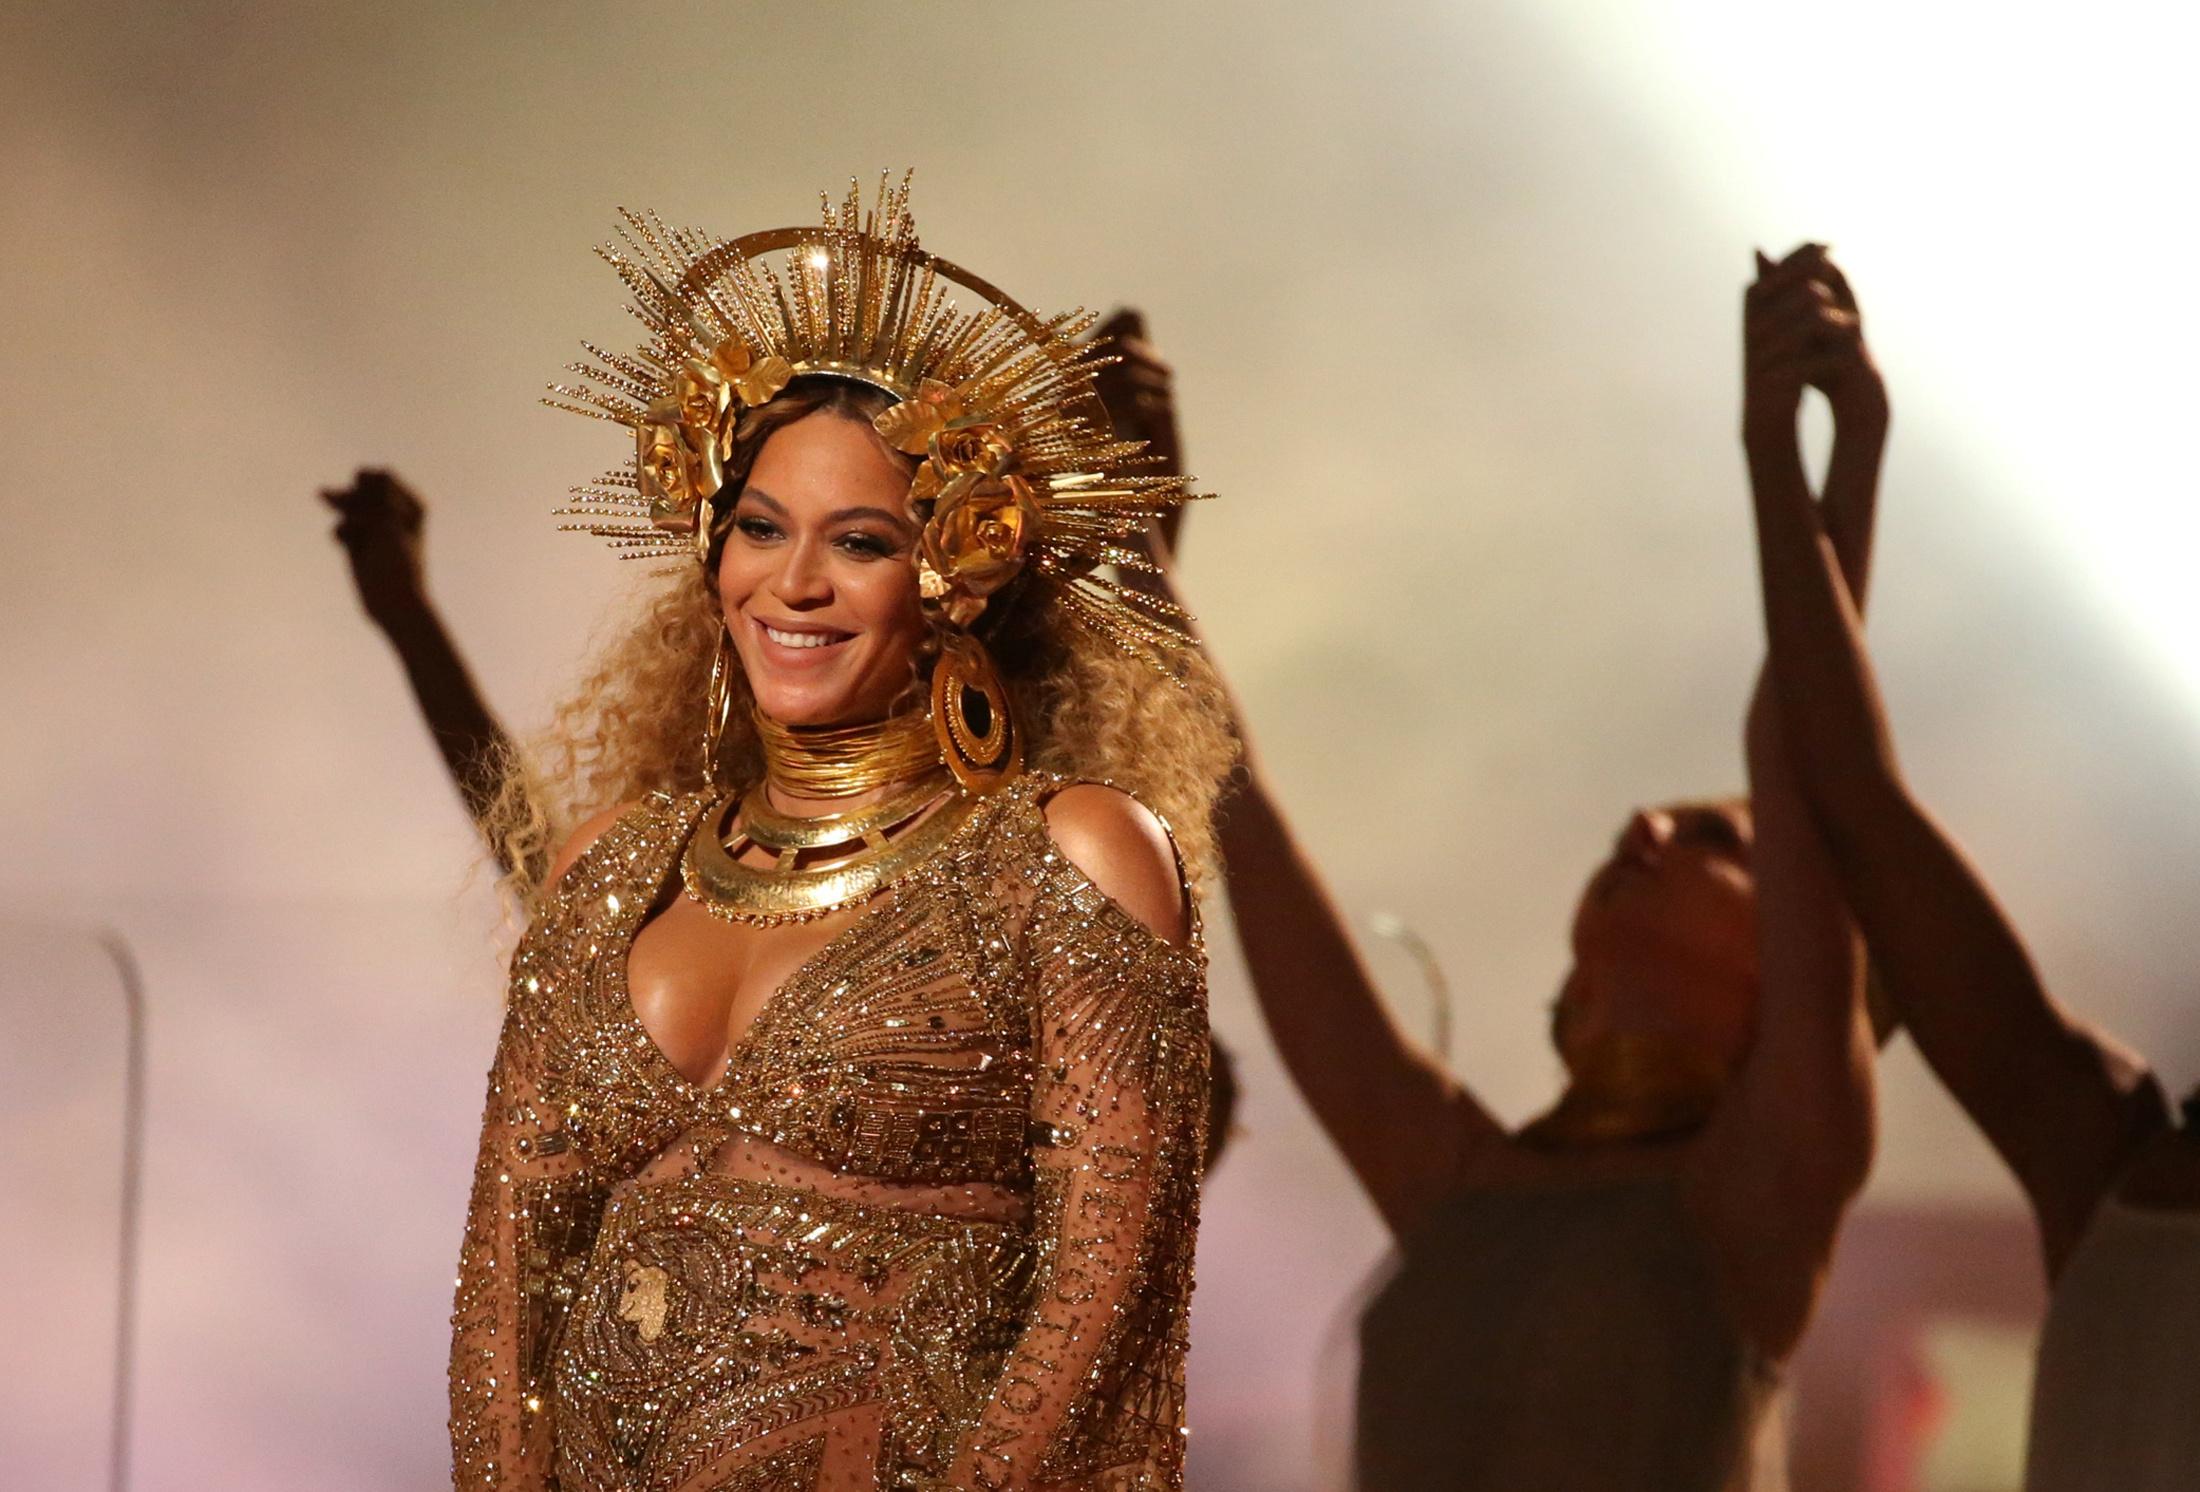 STRÅLER: Peter Dundas’ første presentasjon av sitt nye merke ble gjennom selveste Beyoncé under Grammy-utdelingen i 2017.